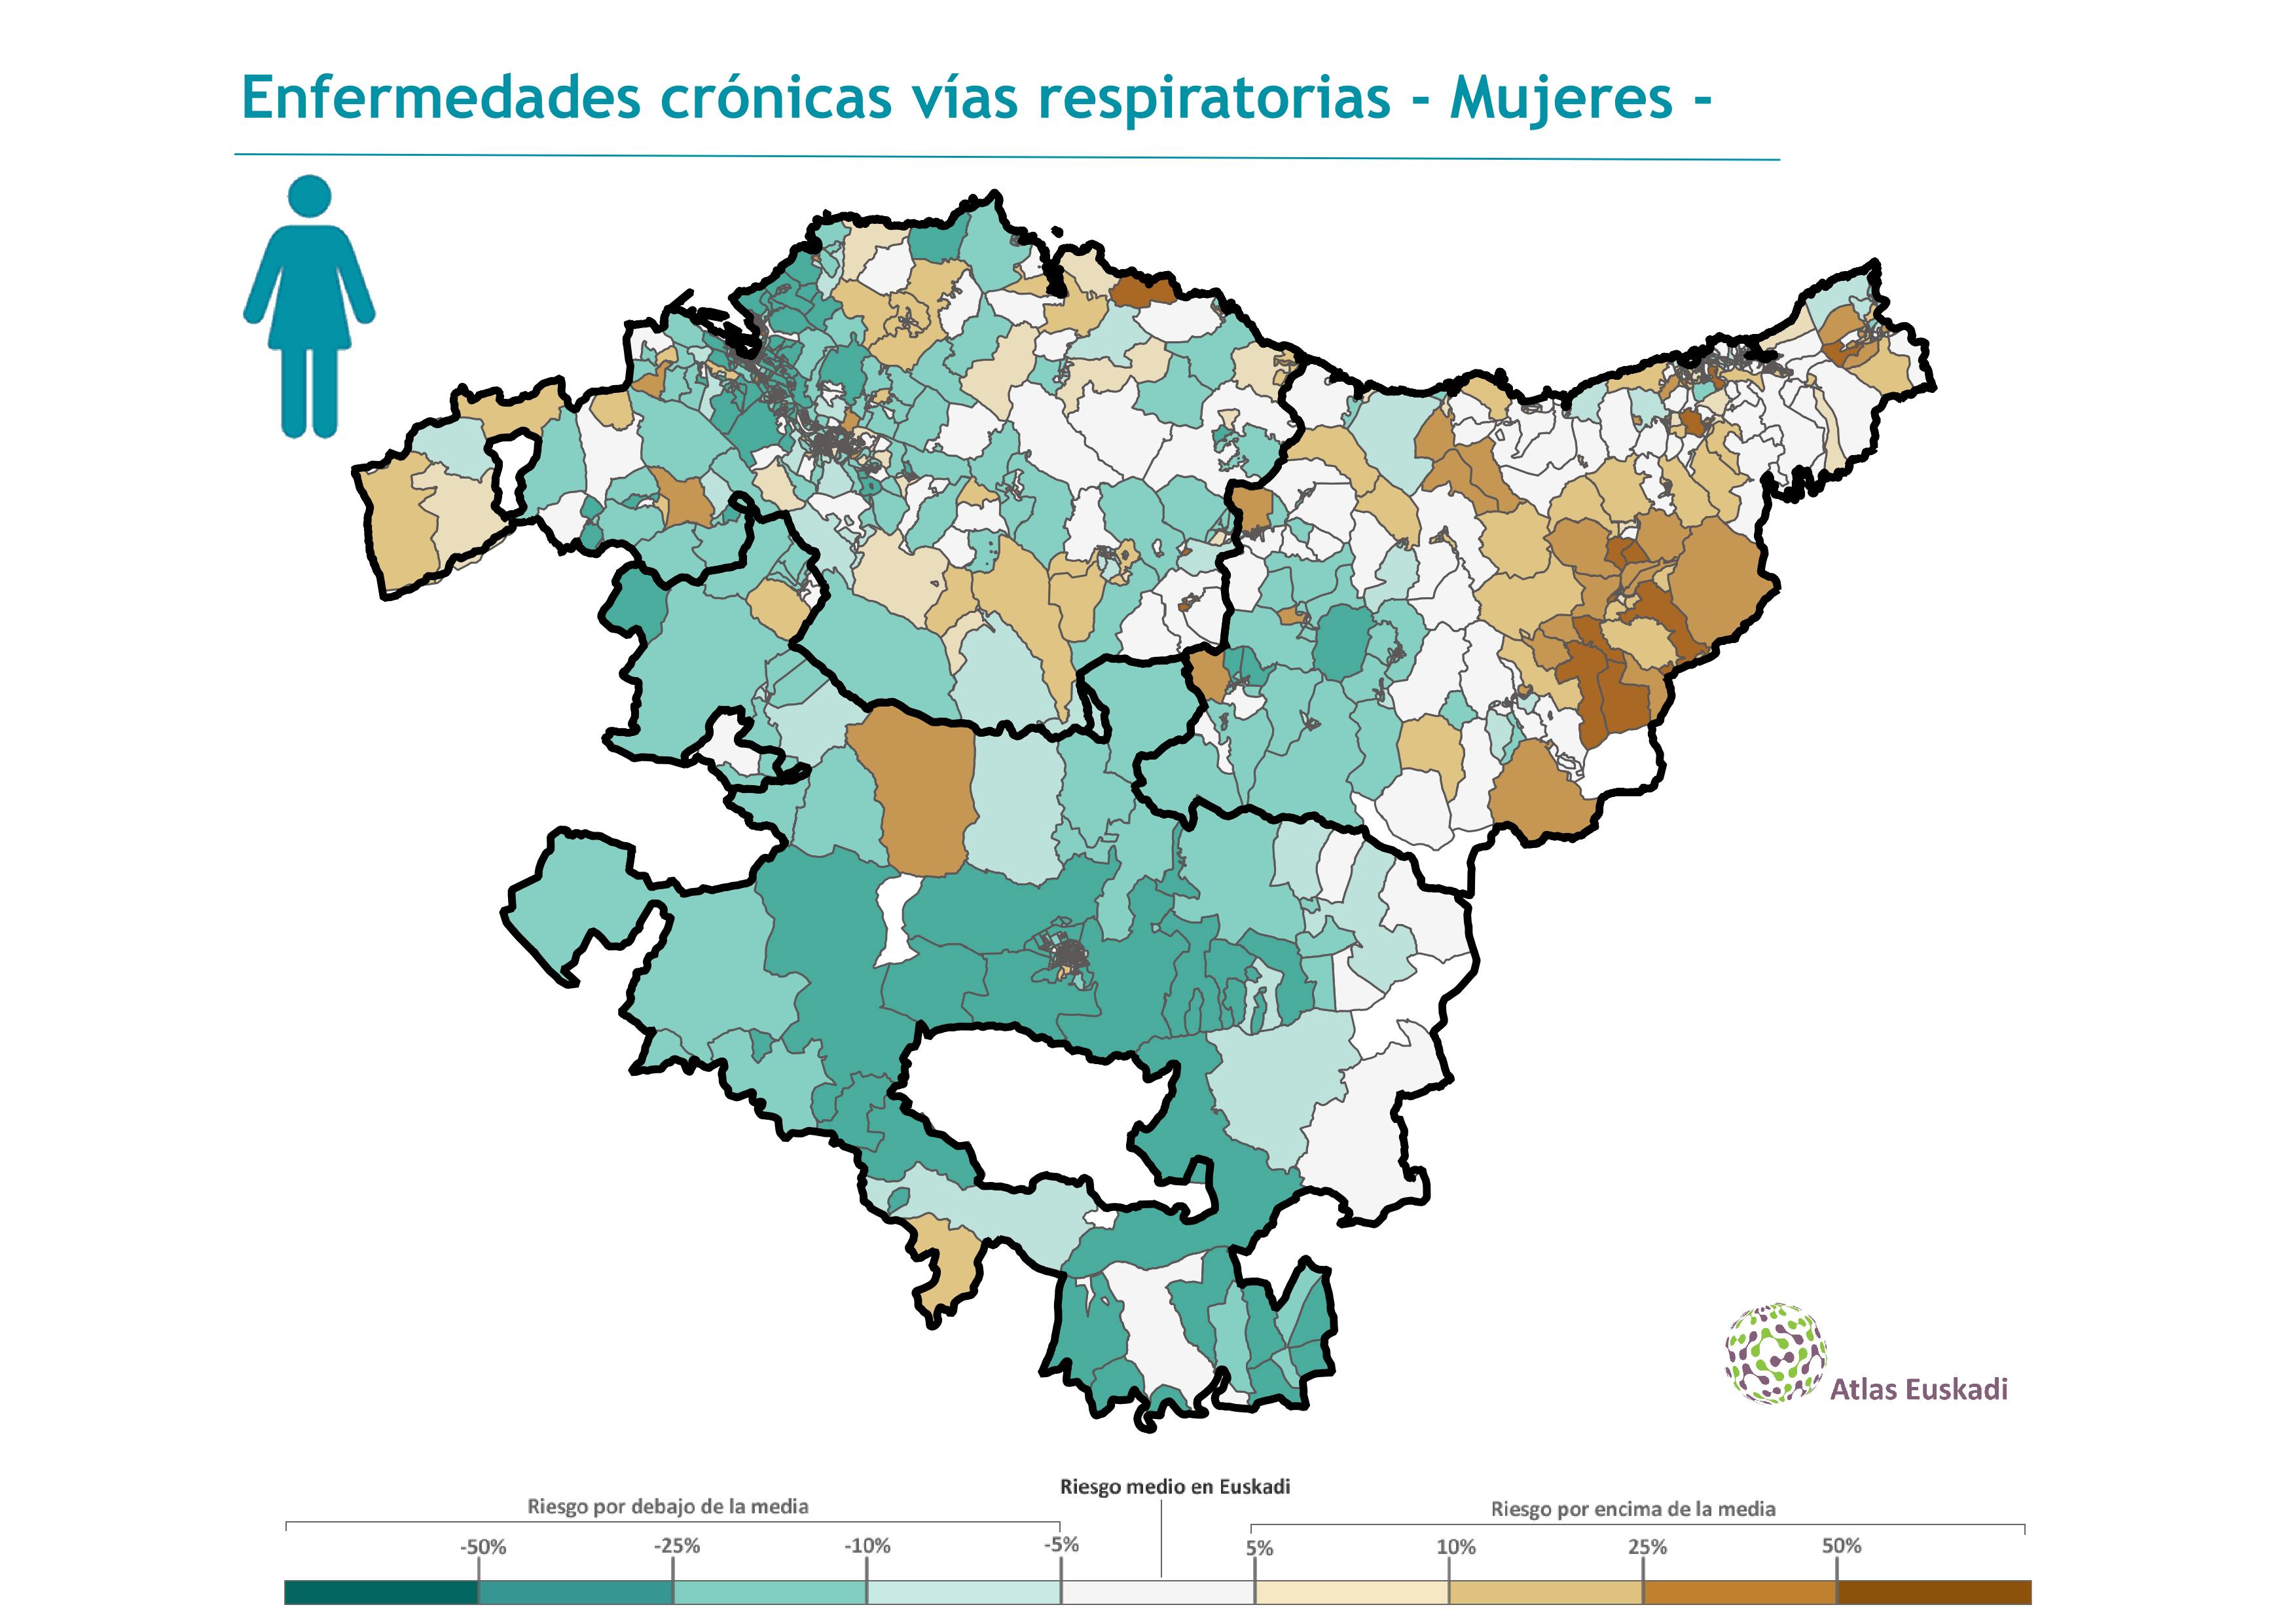 Enfermedades crónicas vías respiratorias (EPOC) mujeres  2002-2007 Euskadi